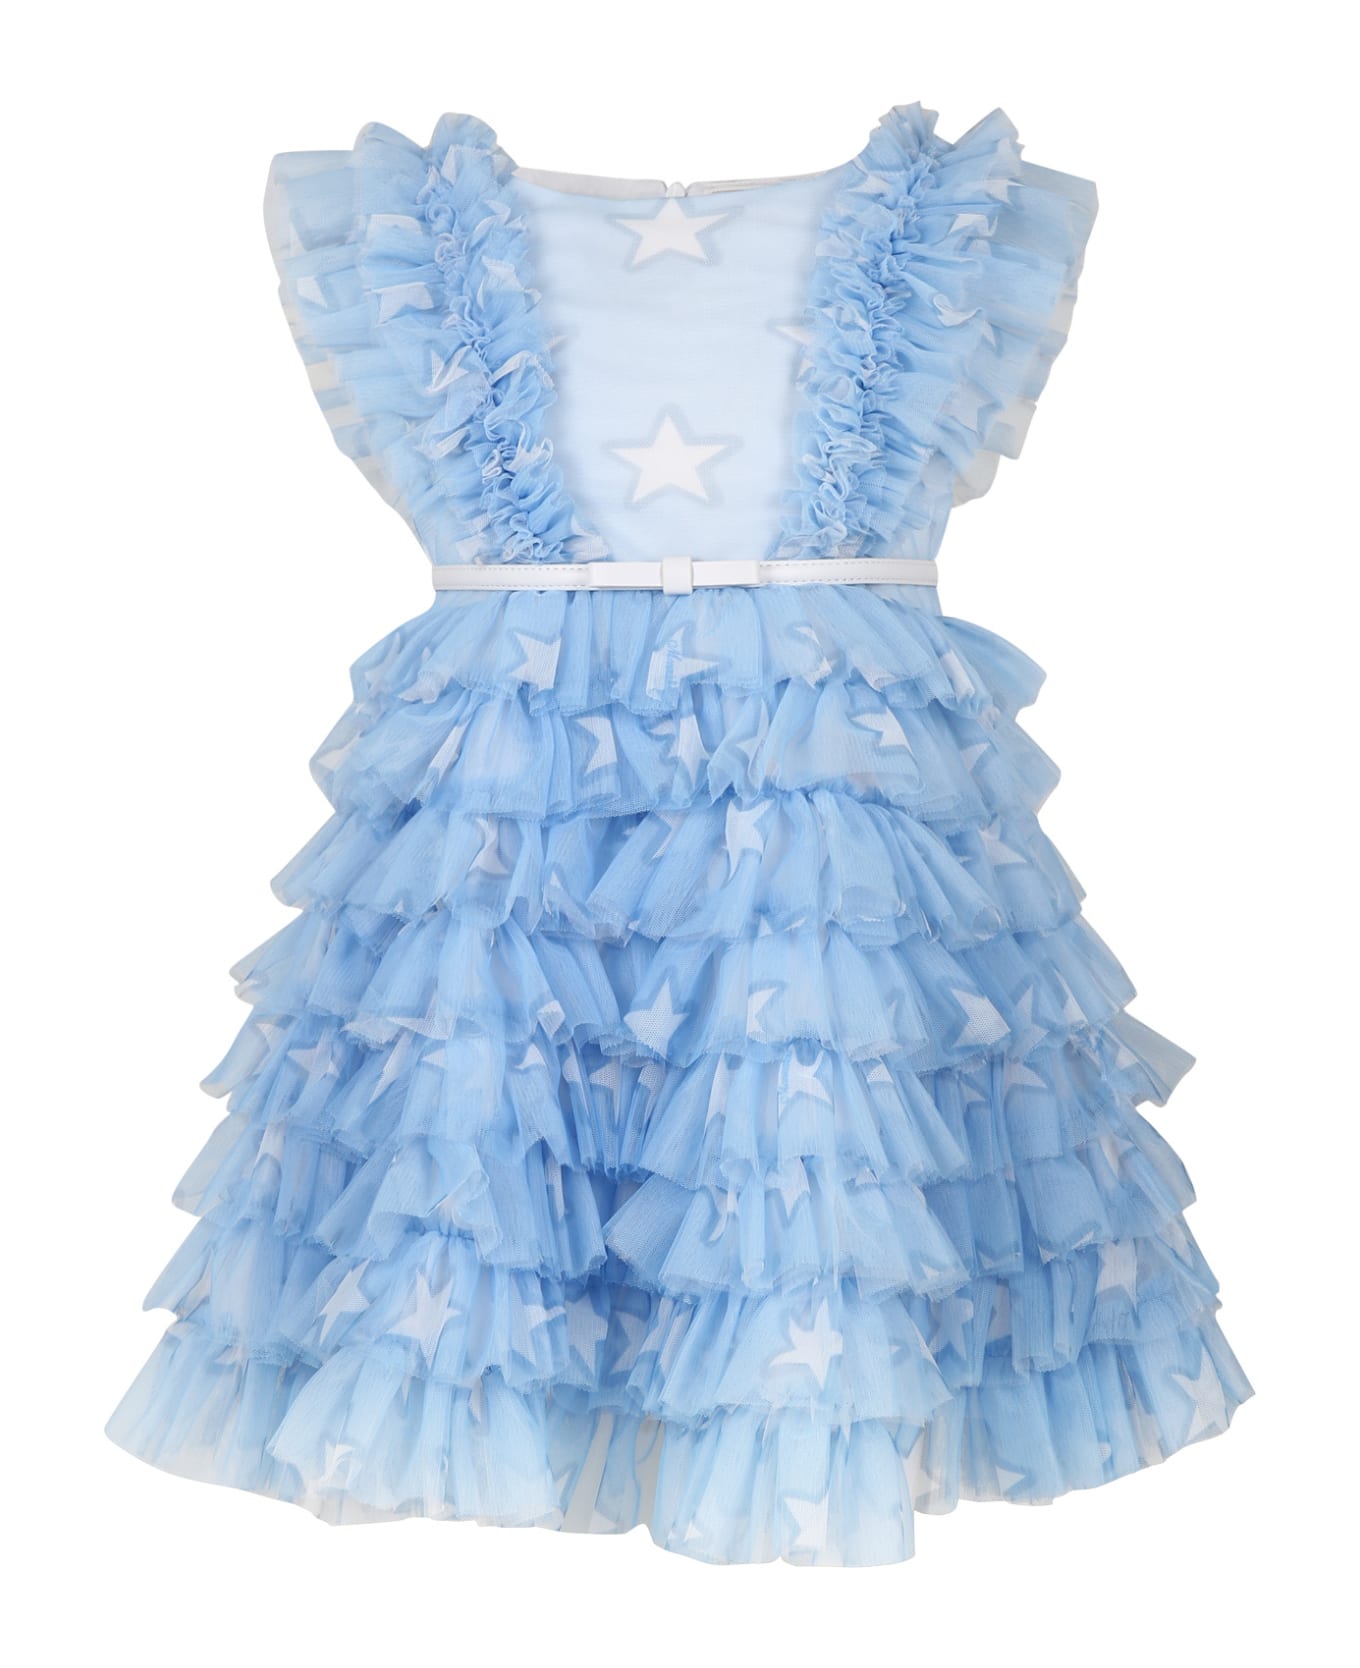 Monnalisa Elegant Sky Blue Saloon Dress For Girl - Light Blue